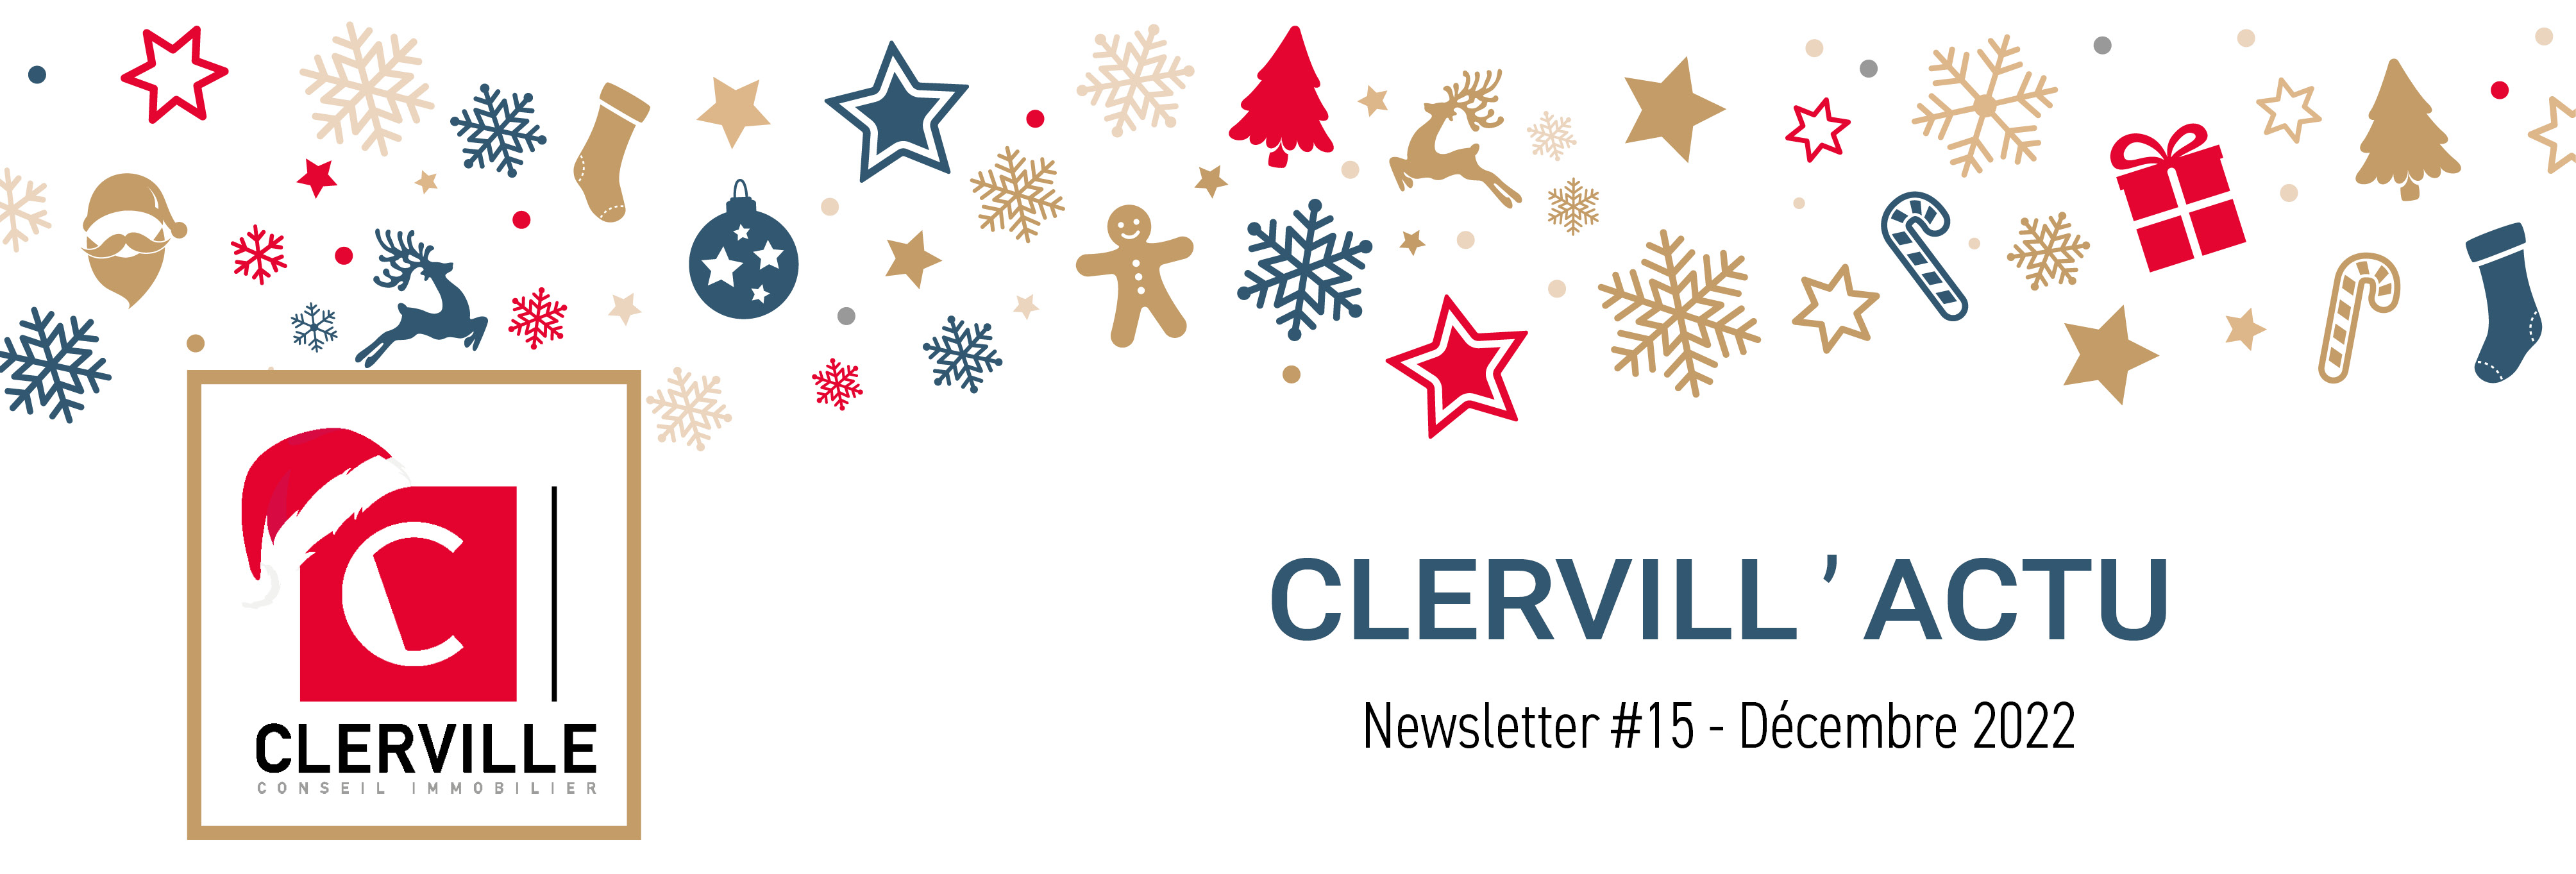 Newsletter CLERVILLE #15 - Edition de Noël - Décembre 2022